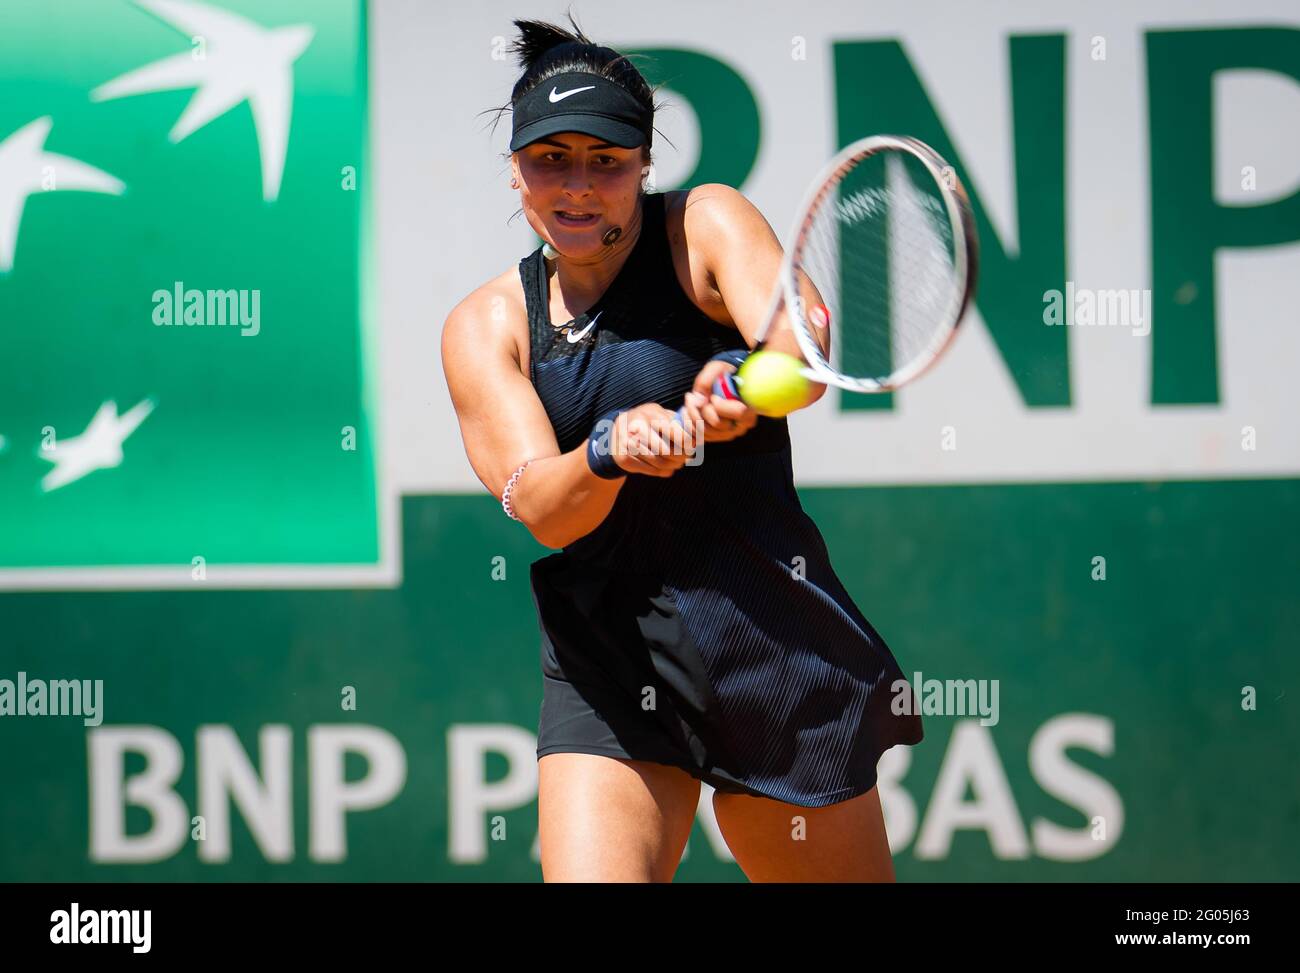 Bianca Andreescu du Canada lors de la première partie du tournoi de tennis  Roland-Garros 2021, Grand Chelem, le 31 mai 2021 au stade Roland-Garros à  Paris, France - photo Rob Prange /